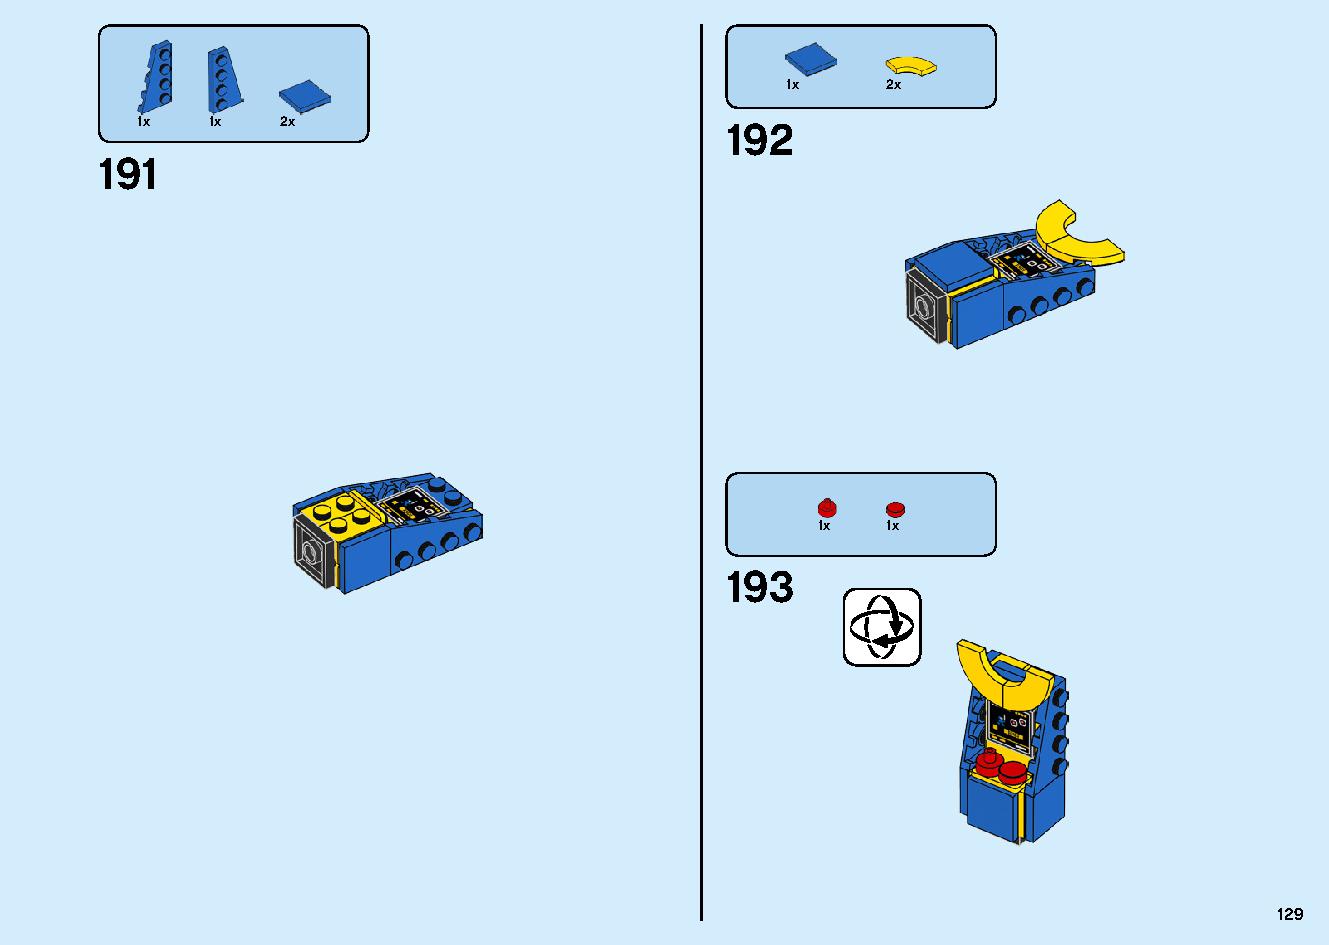 マッドキング神殿 71712 レゴの商品情報 レゴの説明書・組立方法 129 page